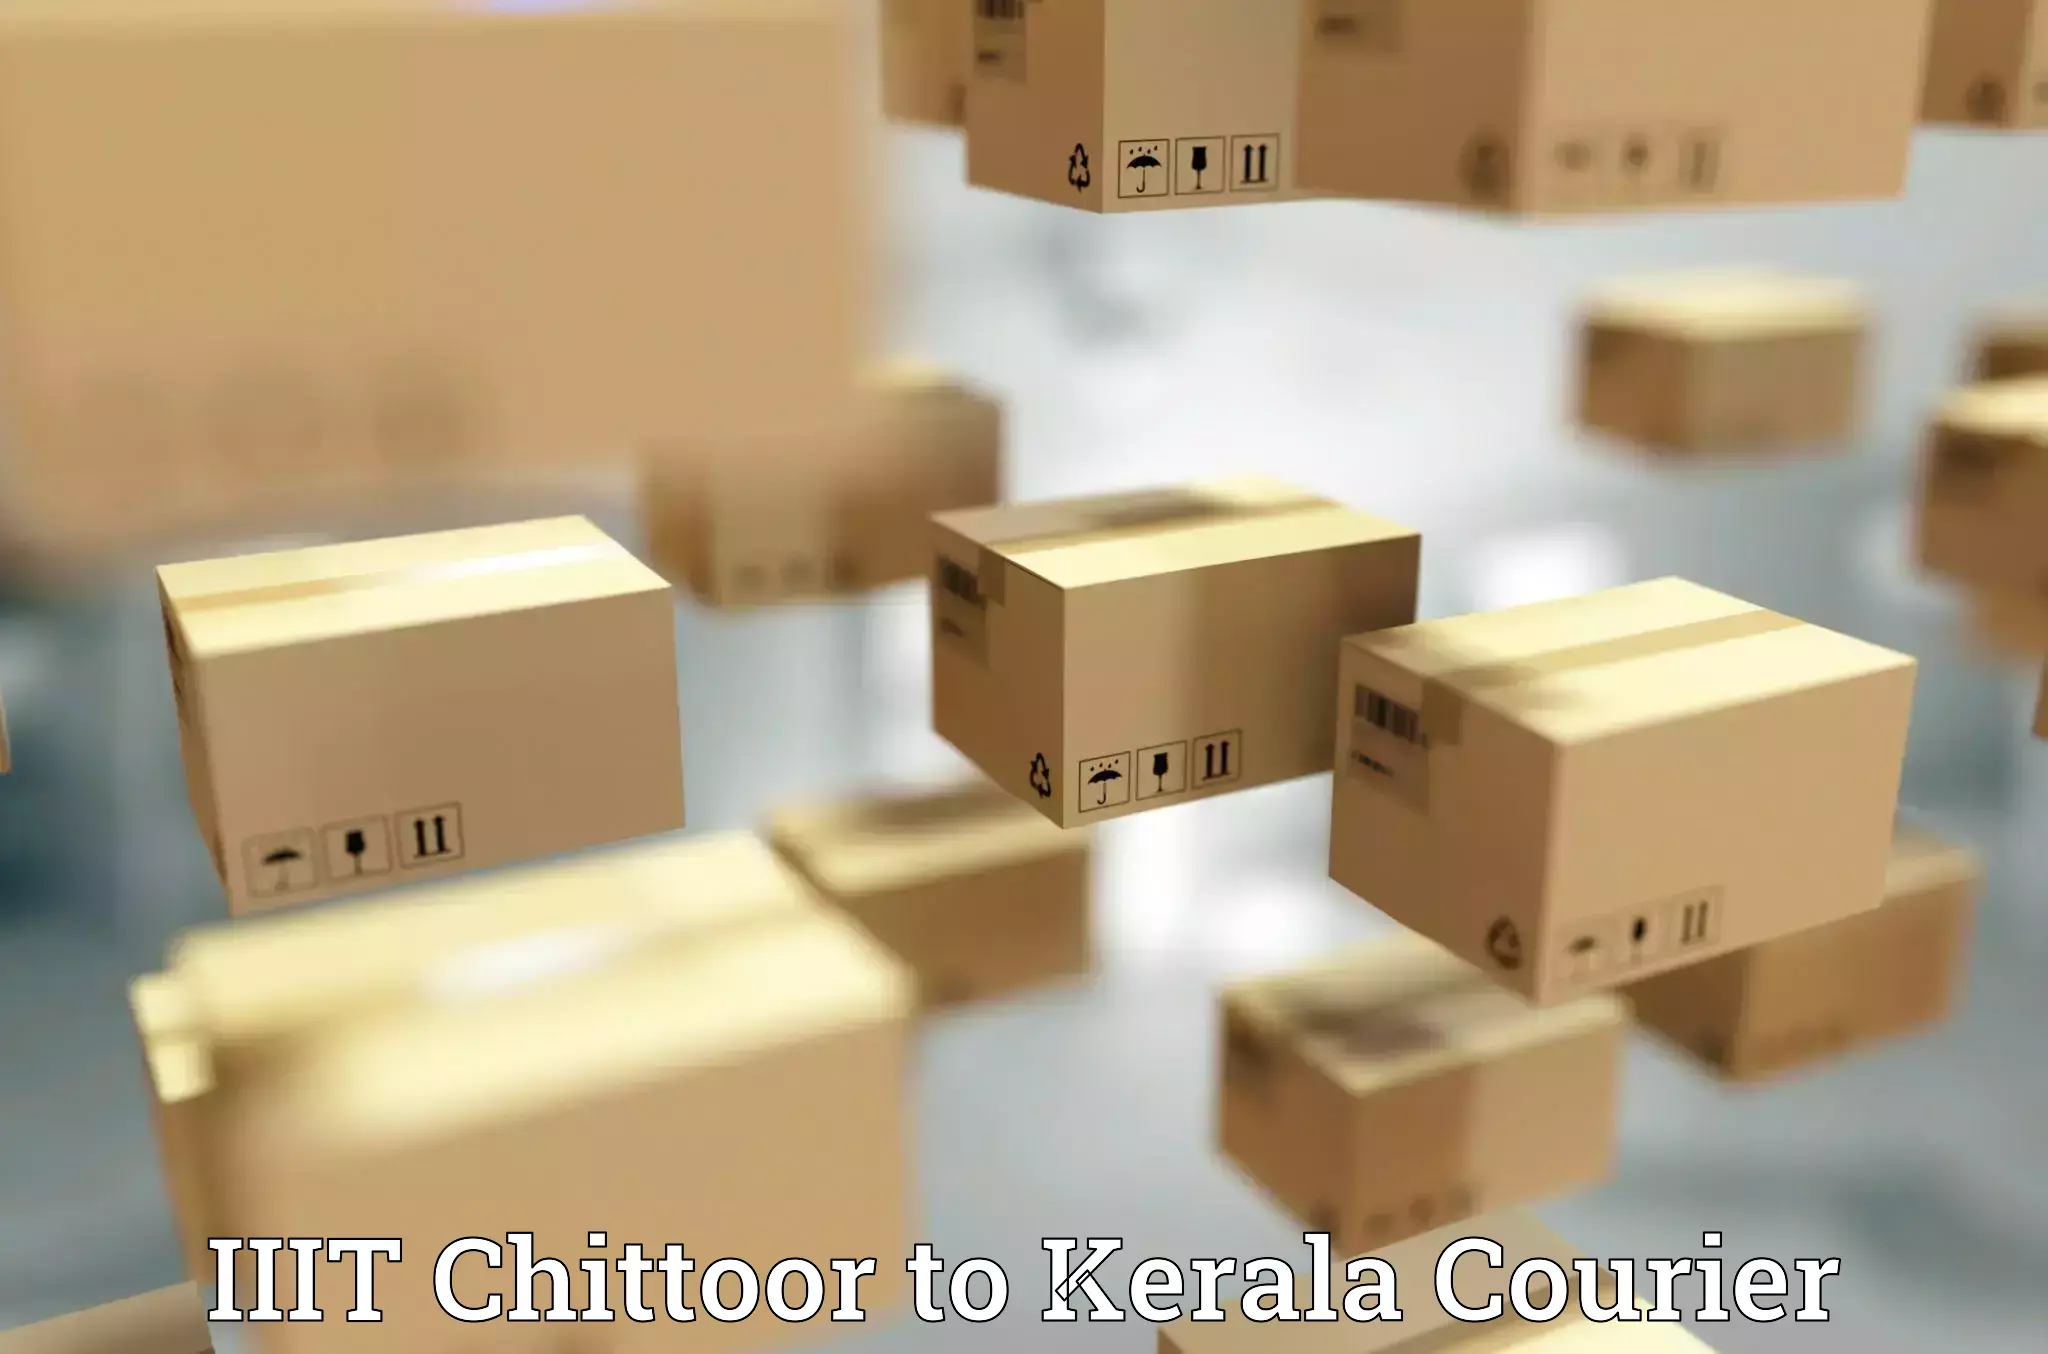 Quick courier services IIIT Chittoor to Kalanjoor